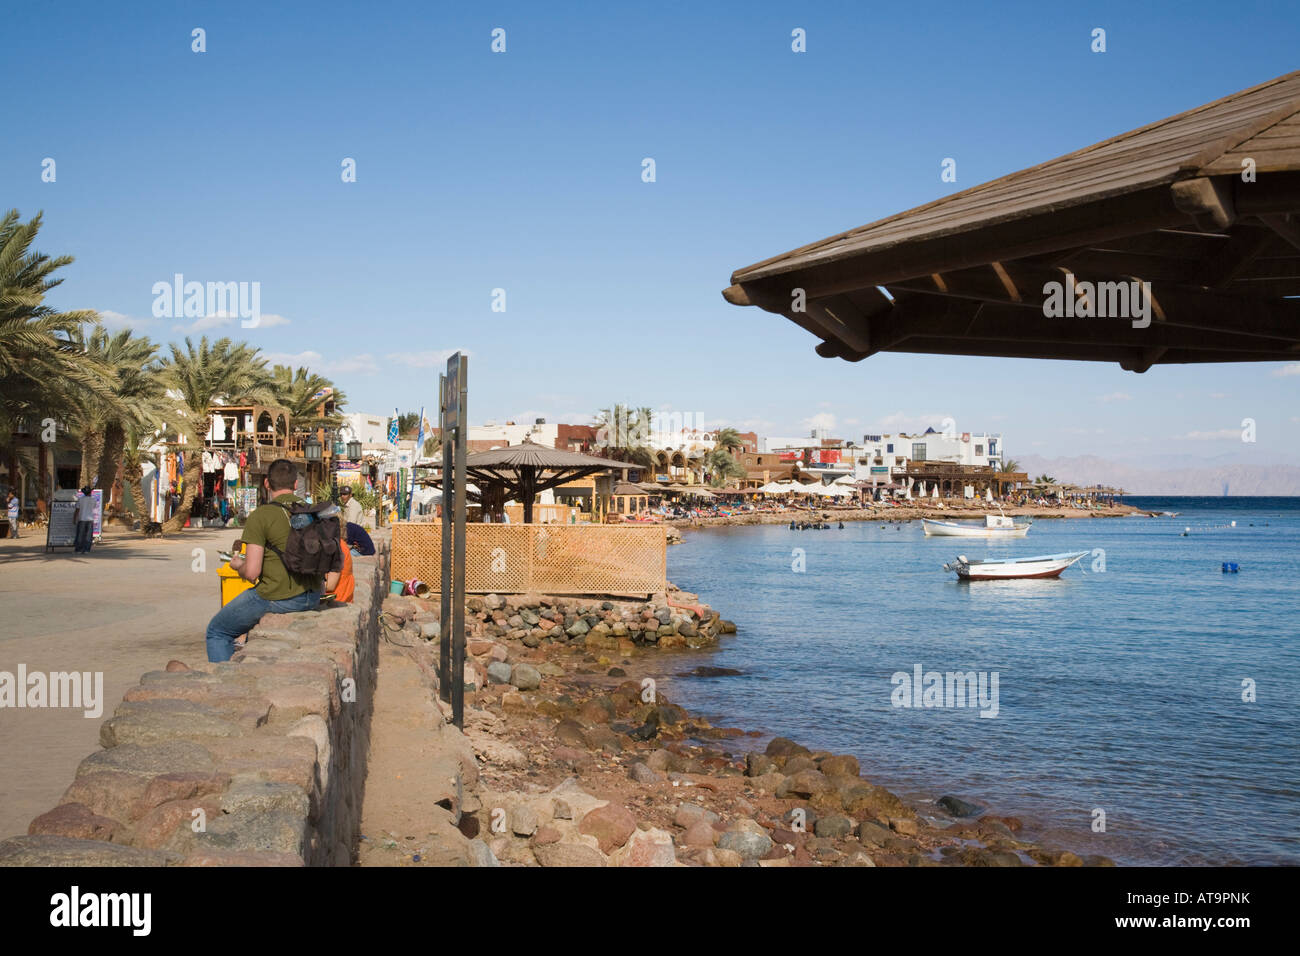 Dahab Sinai-Halbinsel Golf von Aqaba Ägypten Asien Februar Uferpromenade und Bay im Badeort am Roten Meer Ostküste Stockfoto